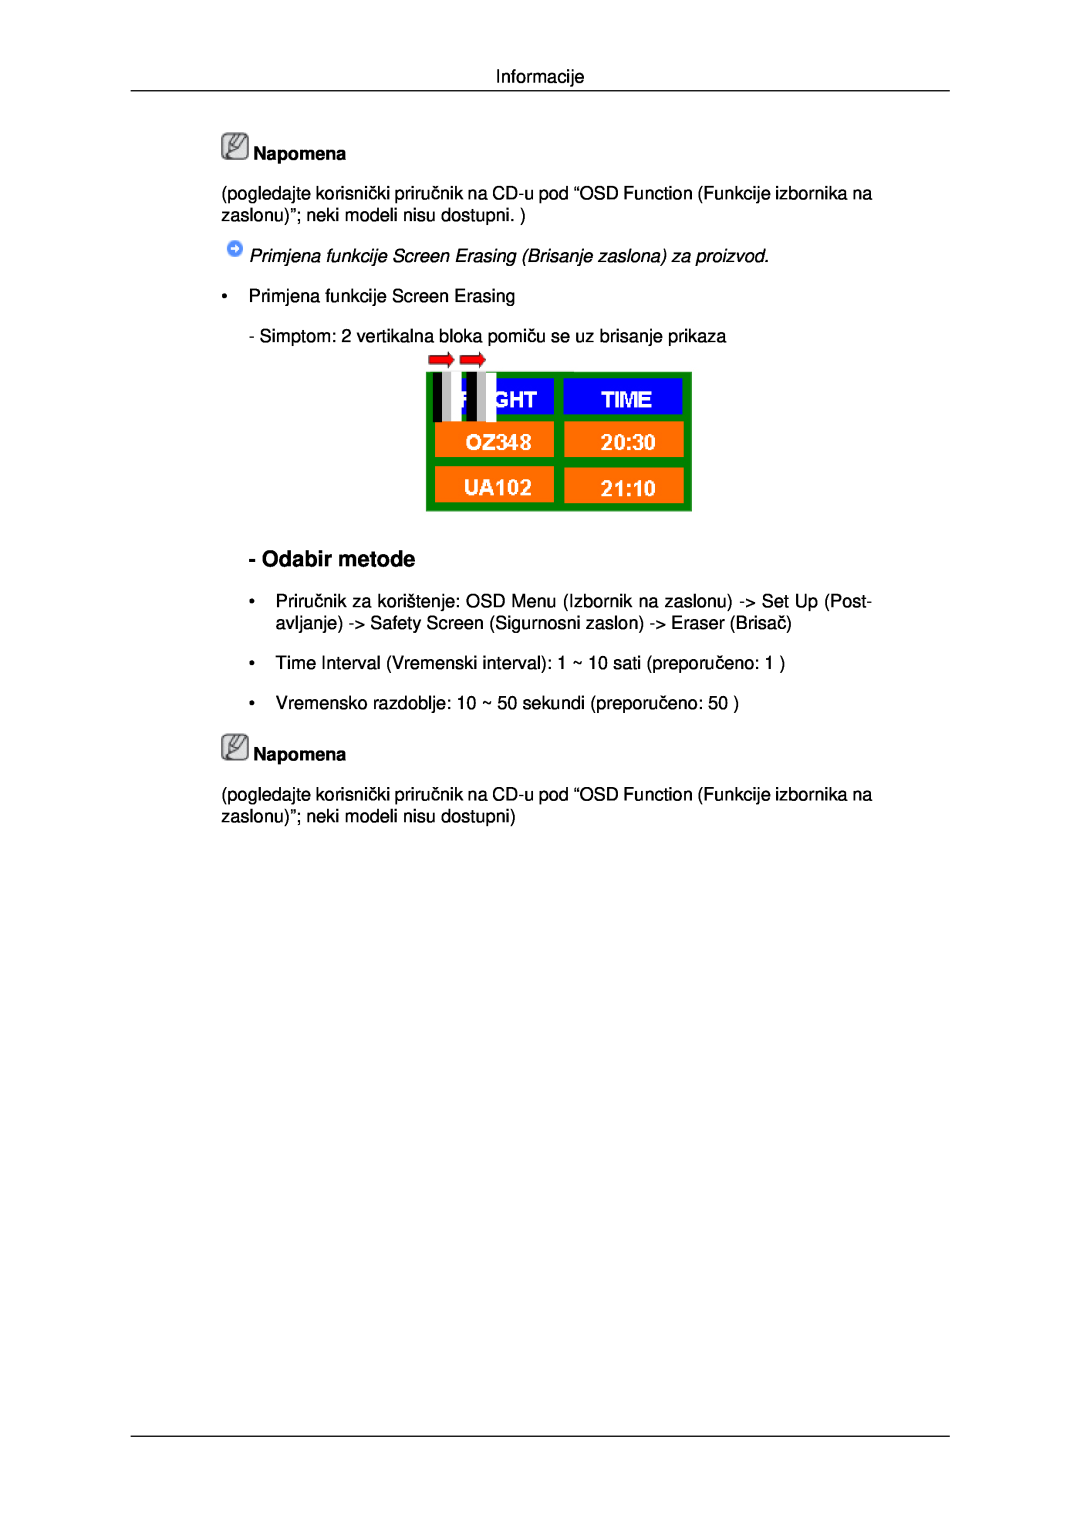 Samsung LH46MSTLBB/EN manual Primjena funkcije Screen Erasing Brisanje zaslona za proizvod, Odabir metode, Napomena 